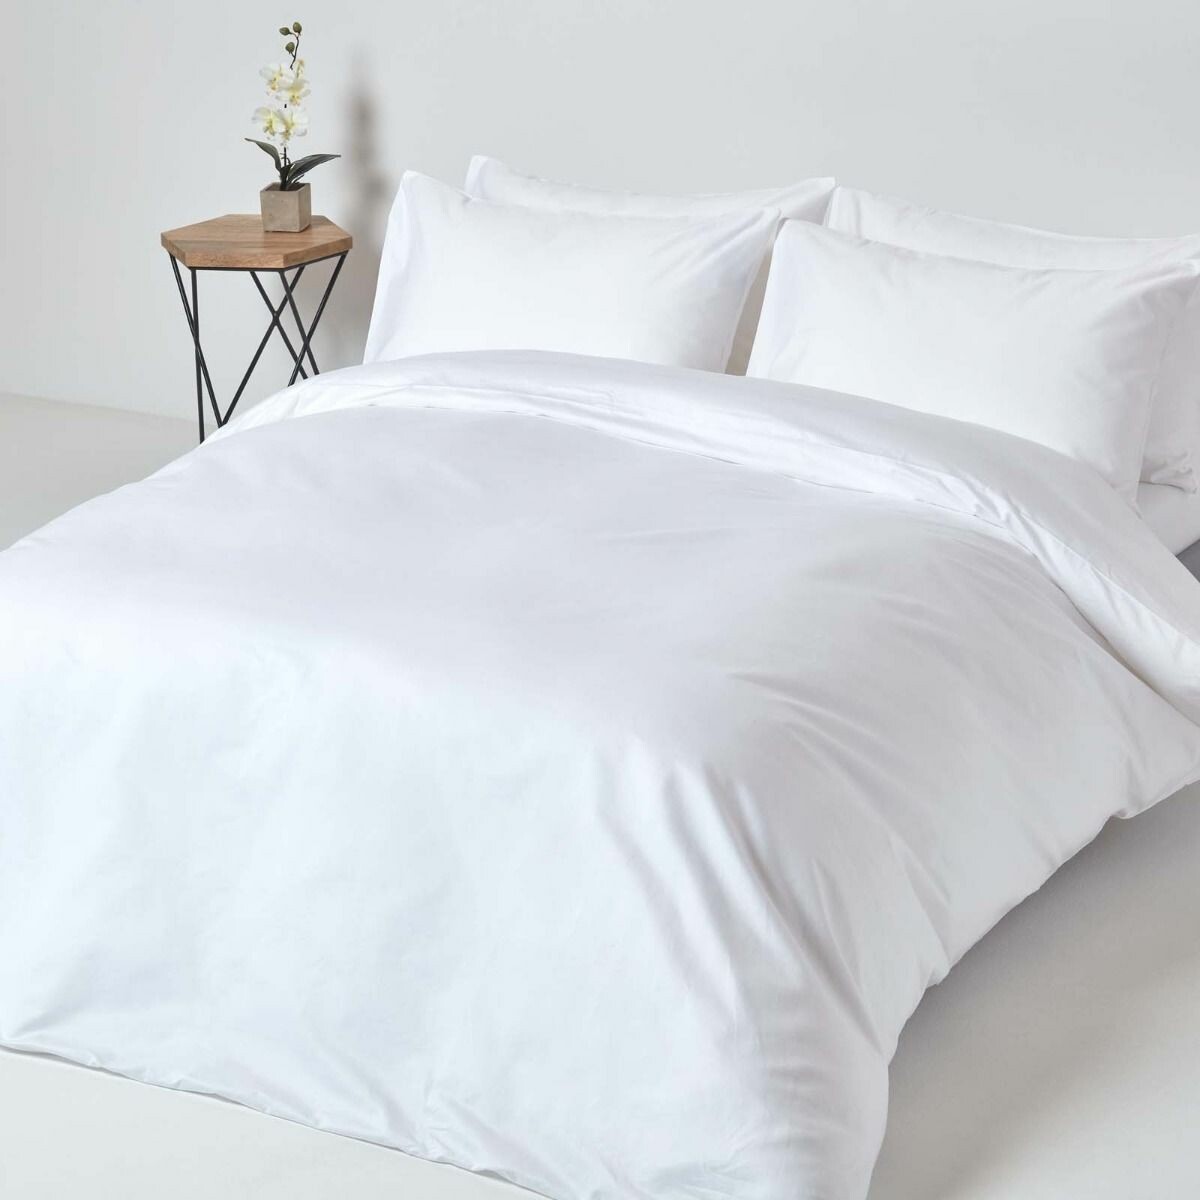 Produktbild von Allergy-friendly bed linen